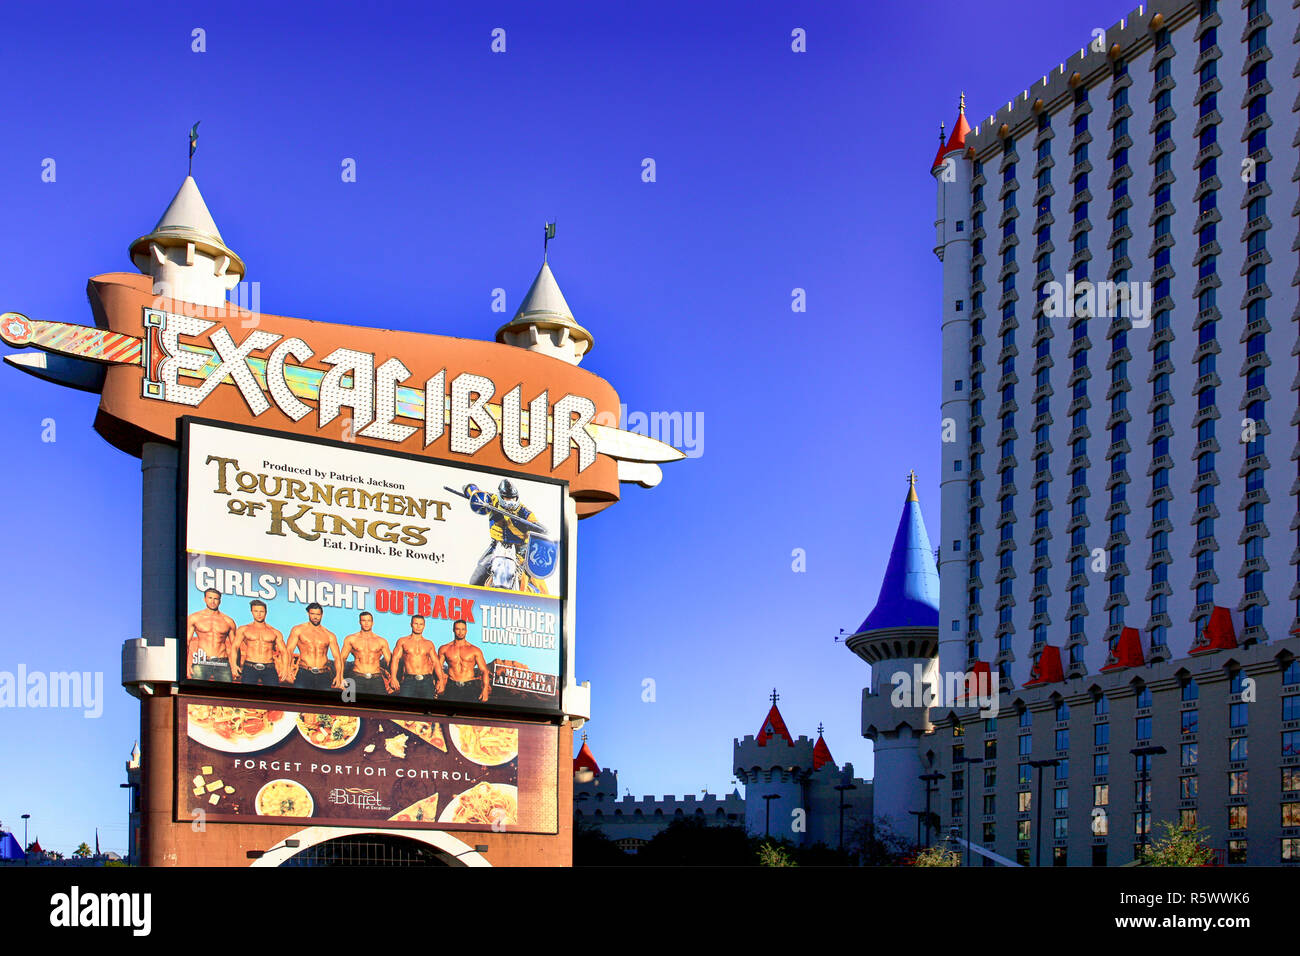 The Excalibur hotel in Las Vegas, Nevada Stock Photo